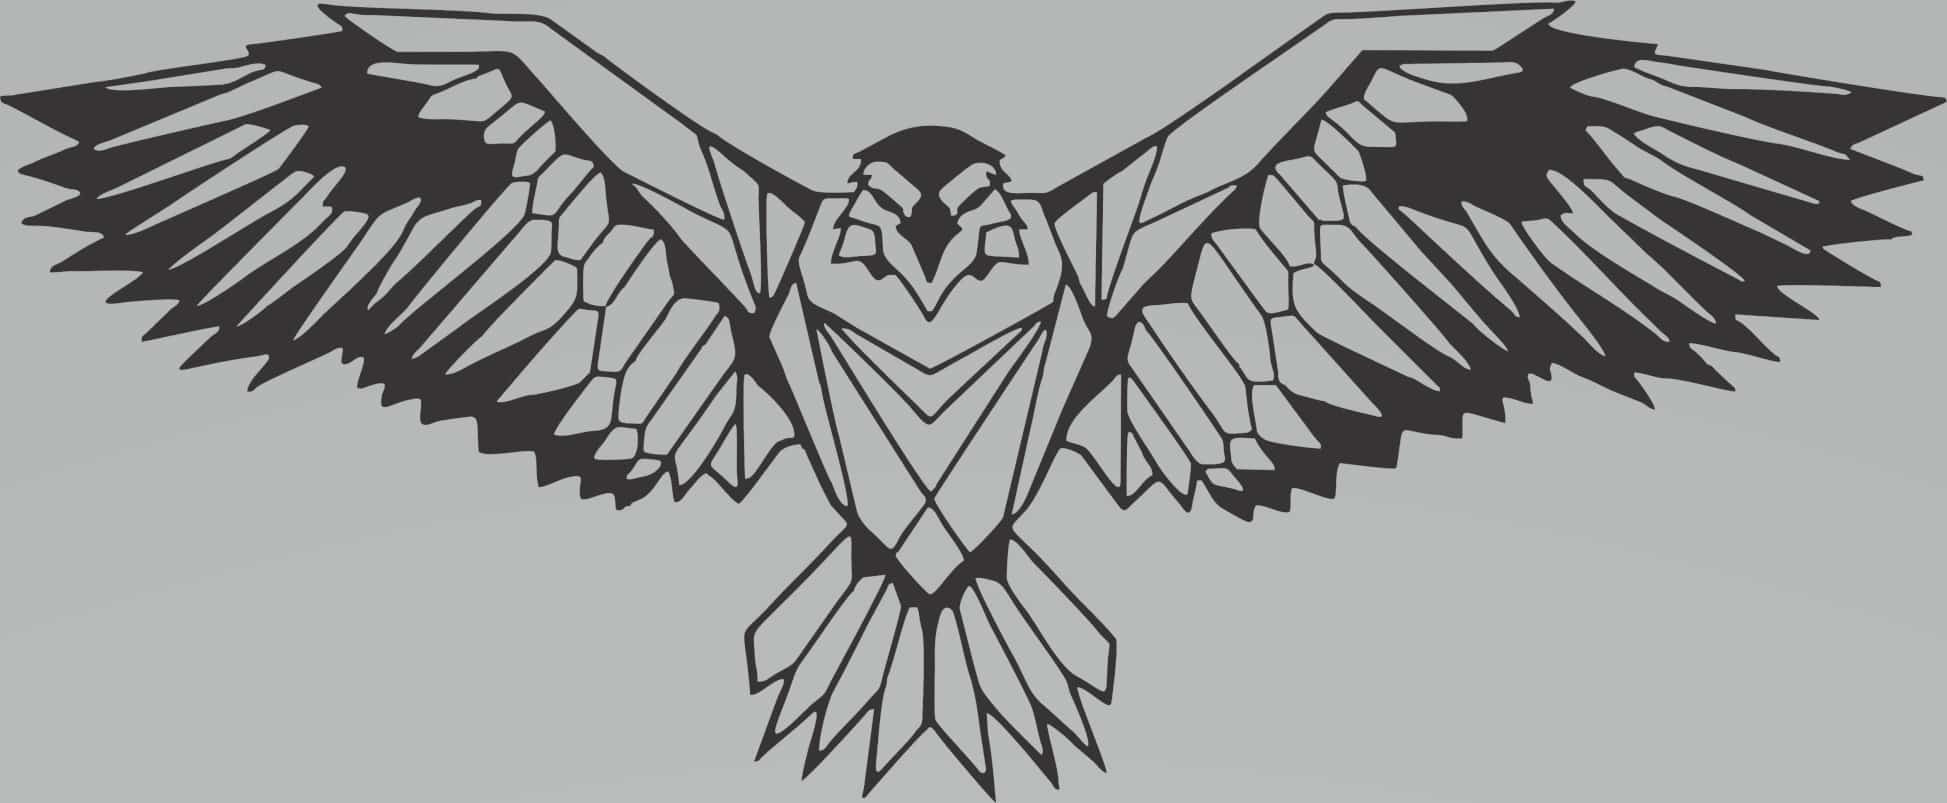 Águila de alas abiertas - Stanser